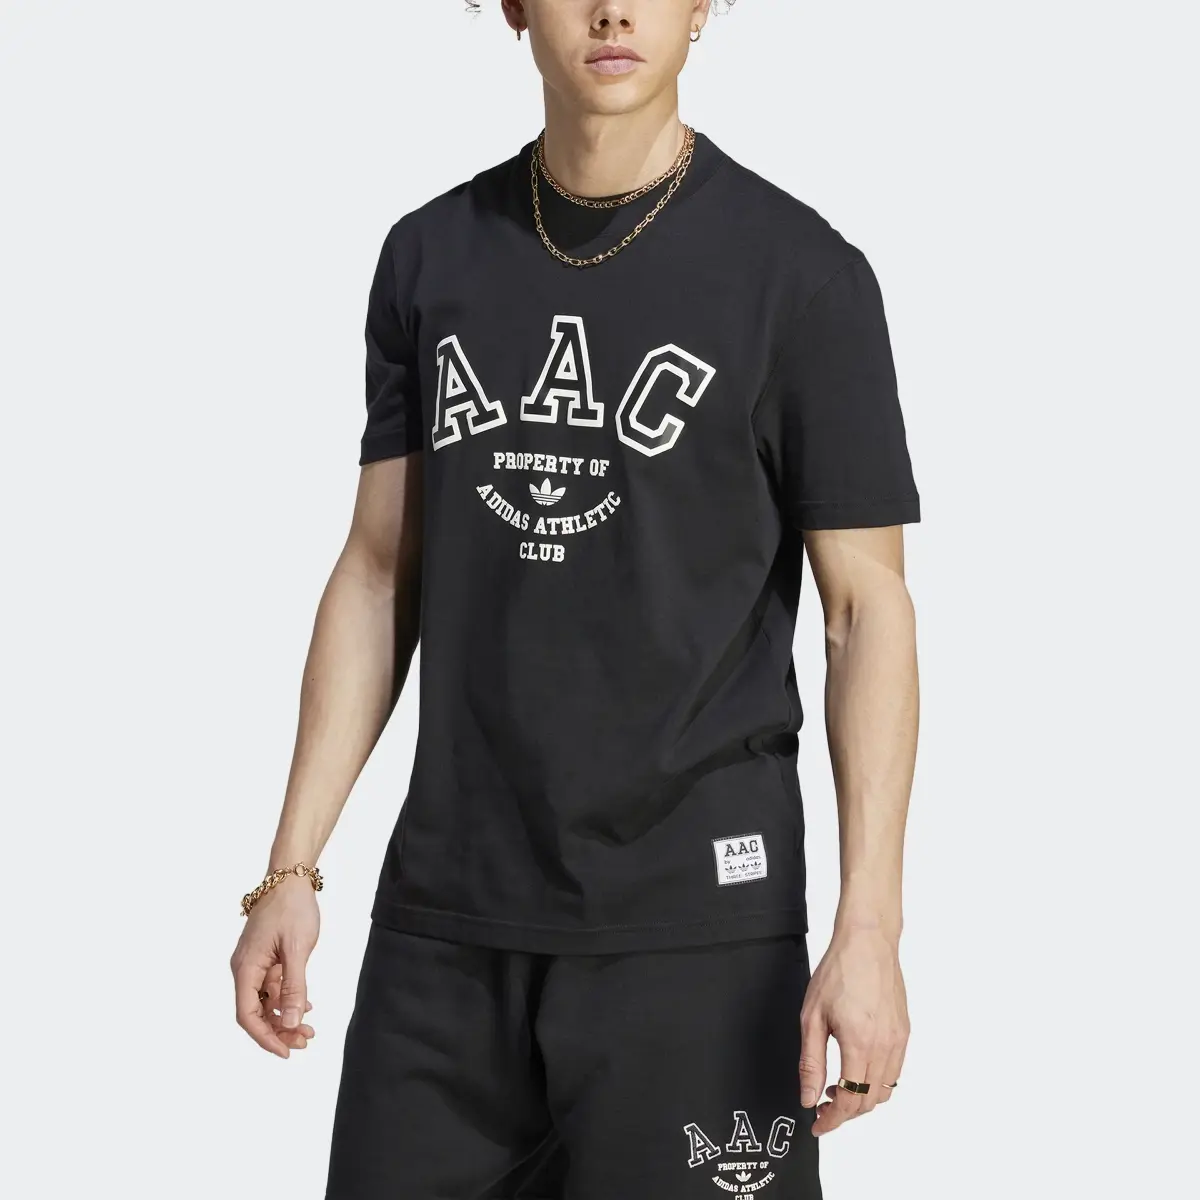 Adidas RIFTA Metro AAC T-Shirt. 1